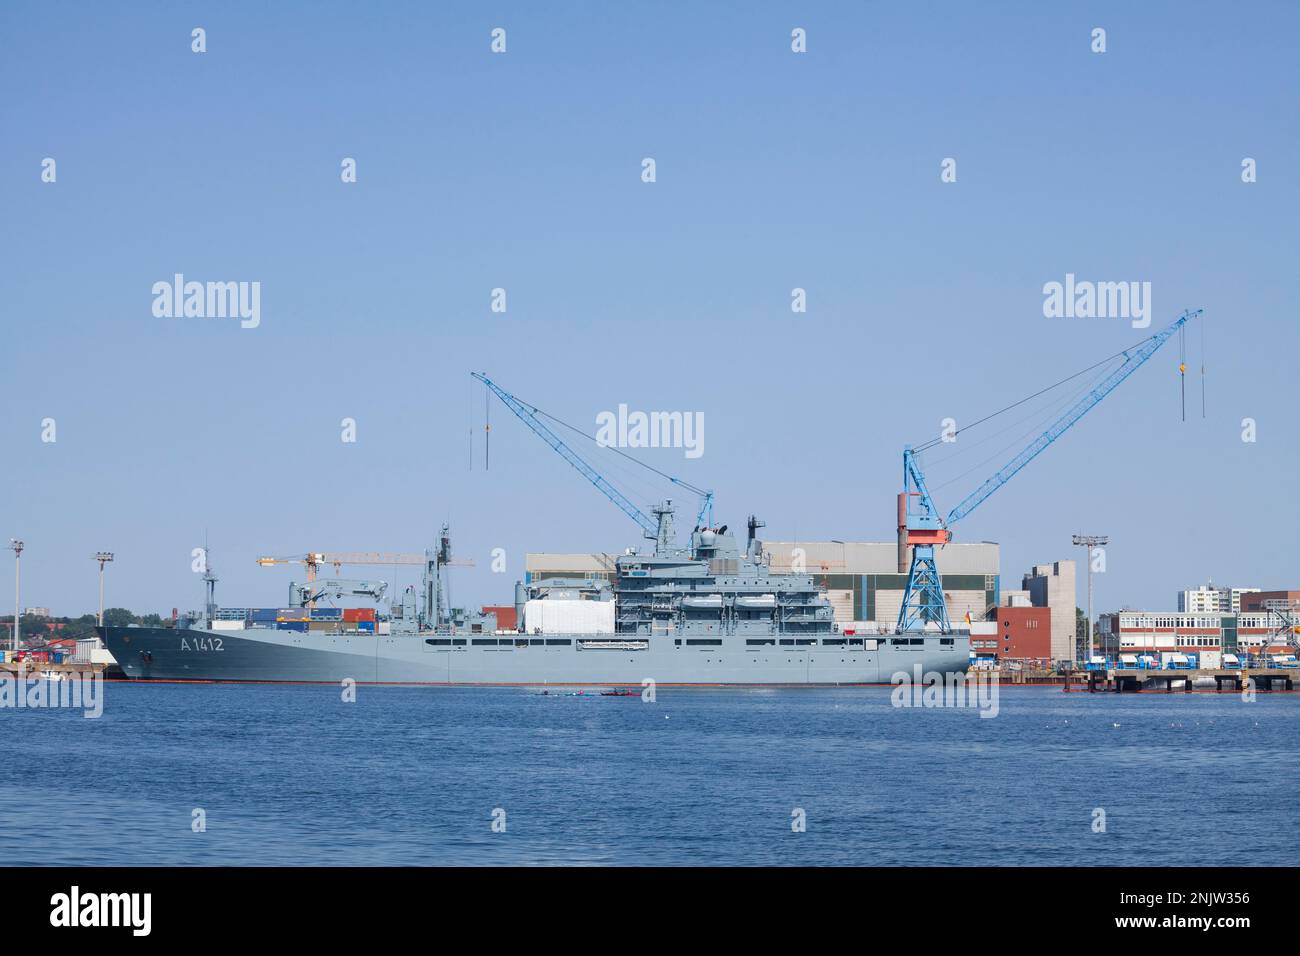 Kriegsschiff und Hafen in Kiel Fjord, Kiel, Schleswig-Holstein, Deutschland Stockfoto